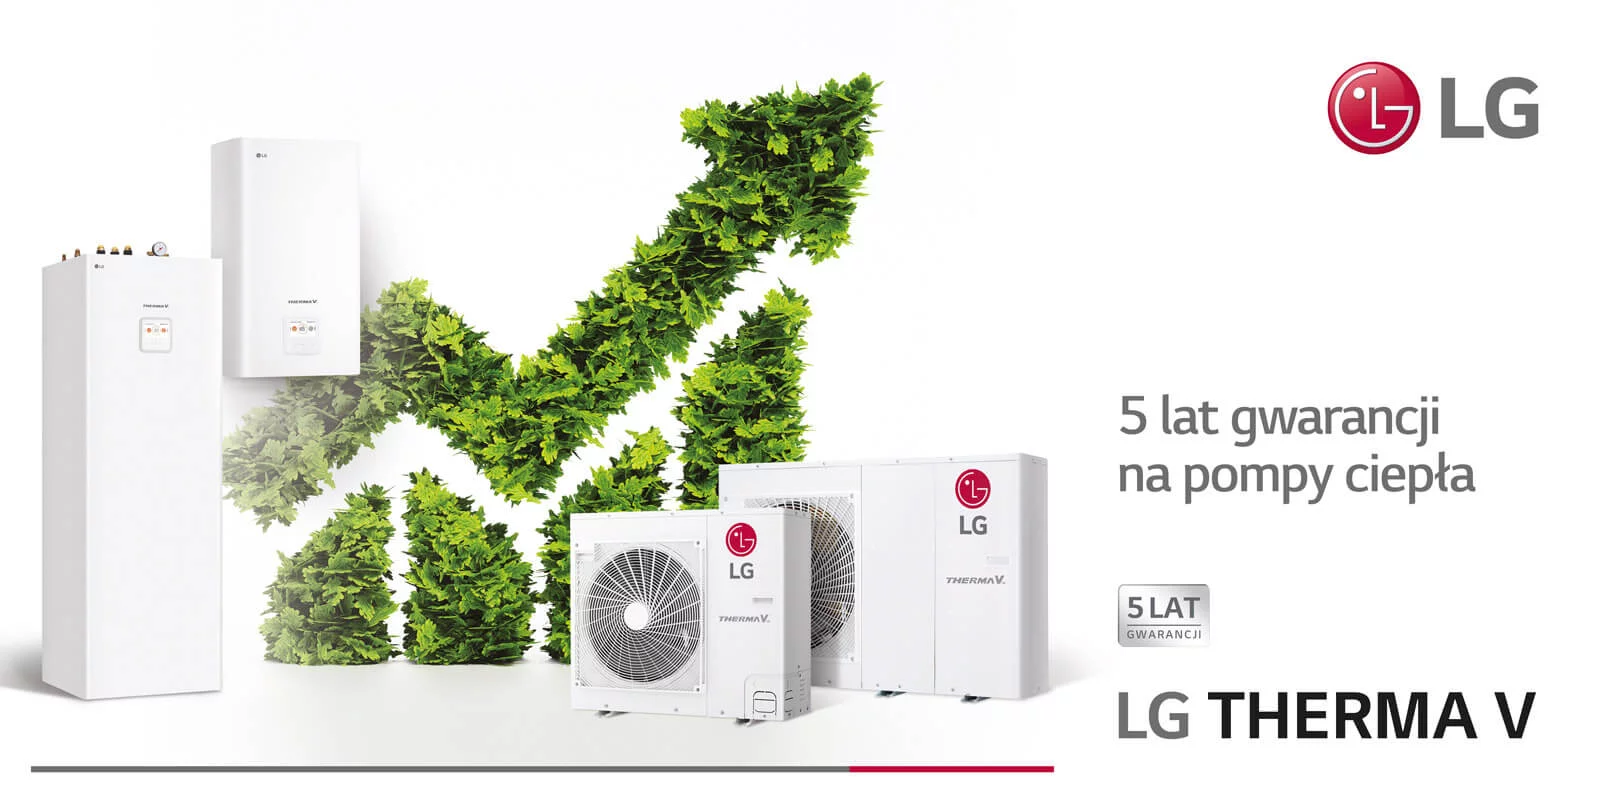 5 lat gwarancji dla wiodącej serii pomp ciepła LG Therma V